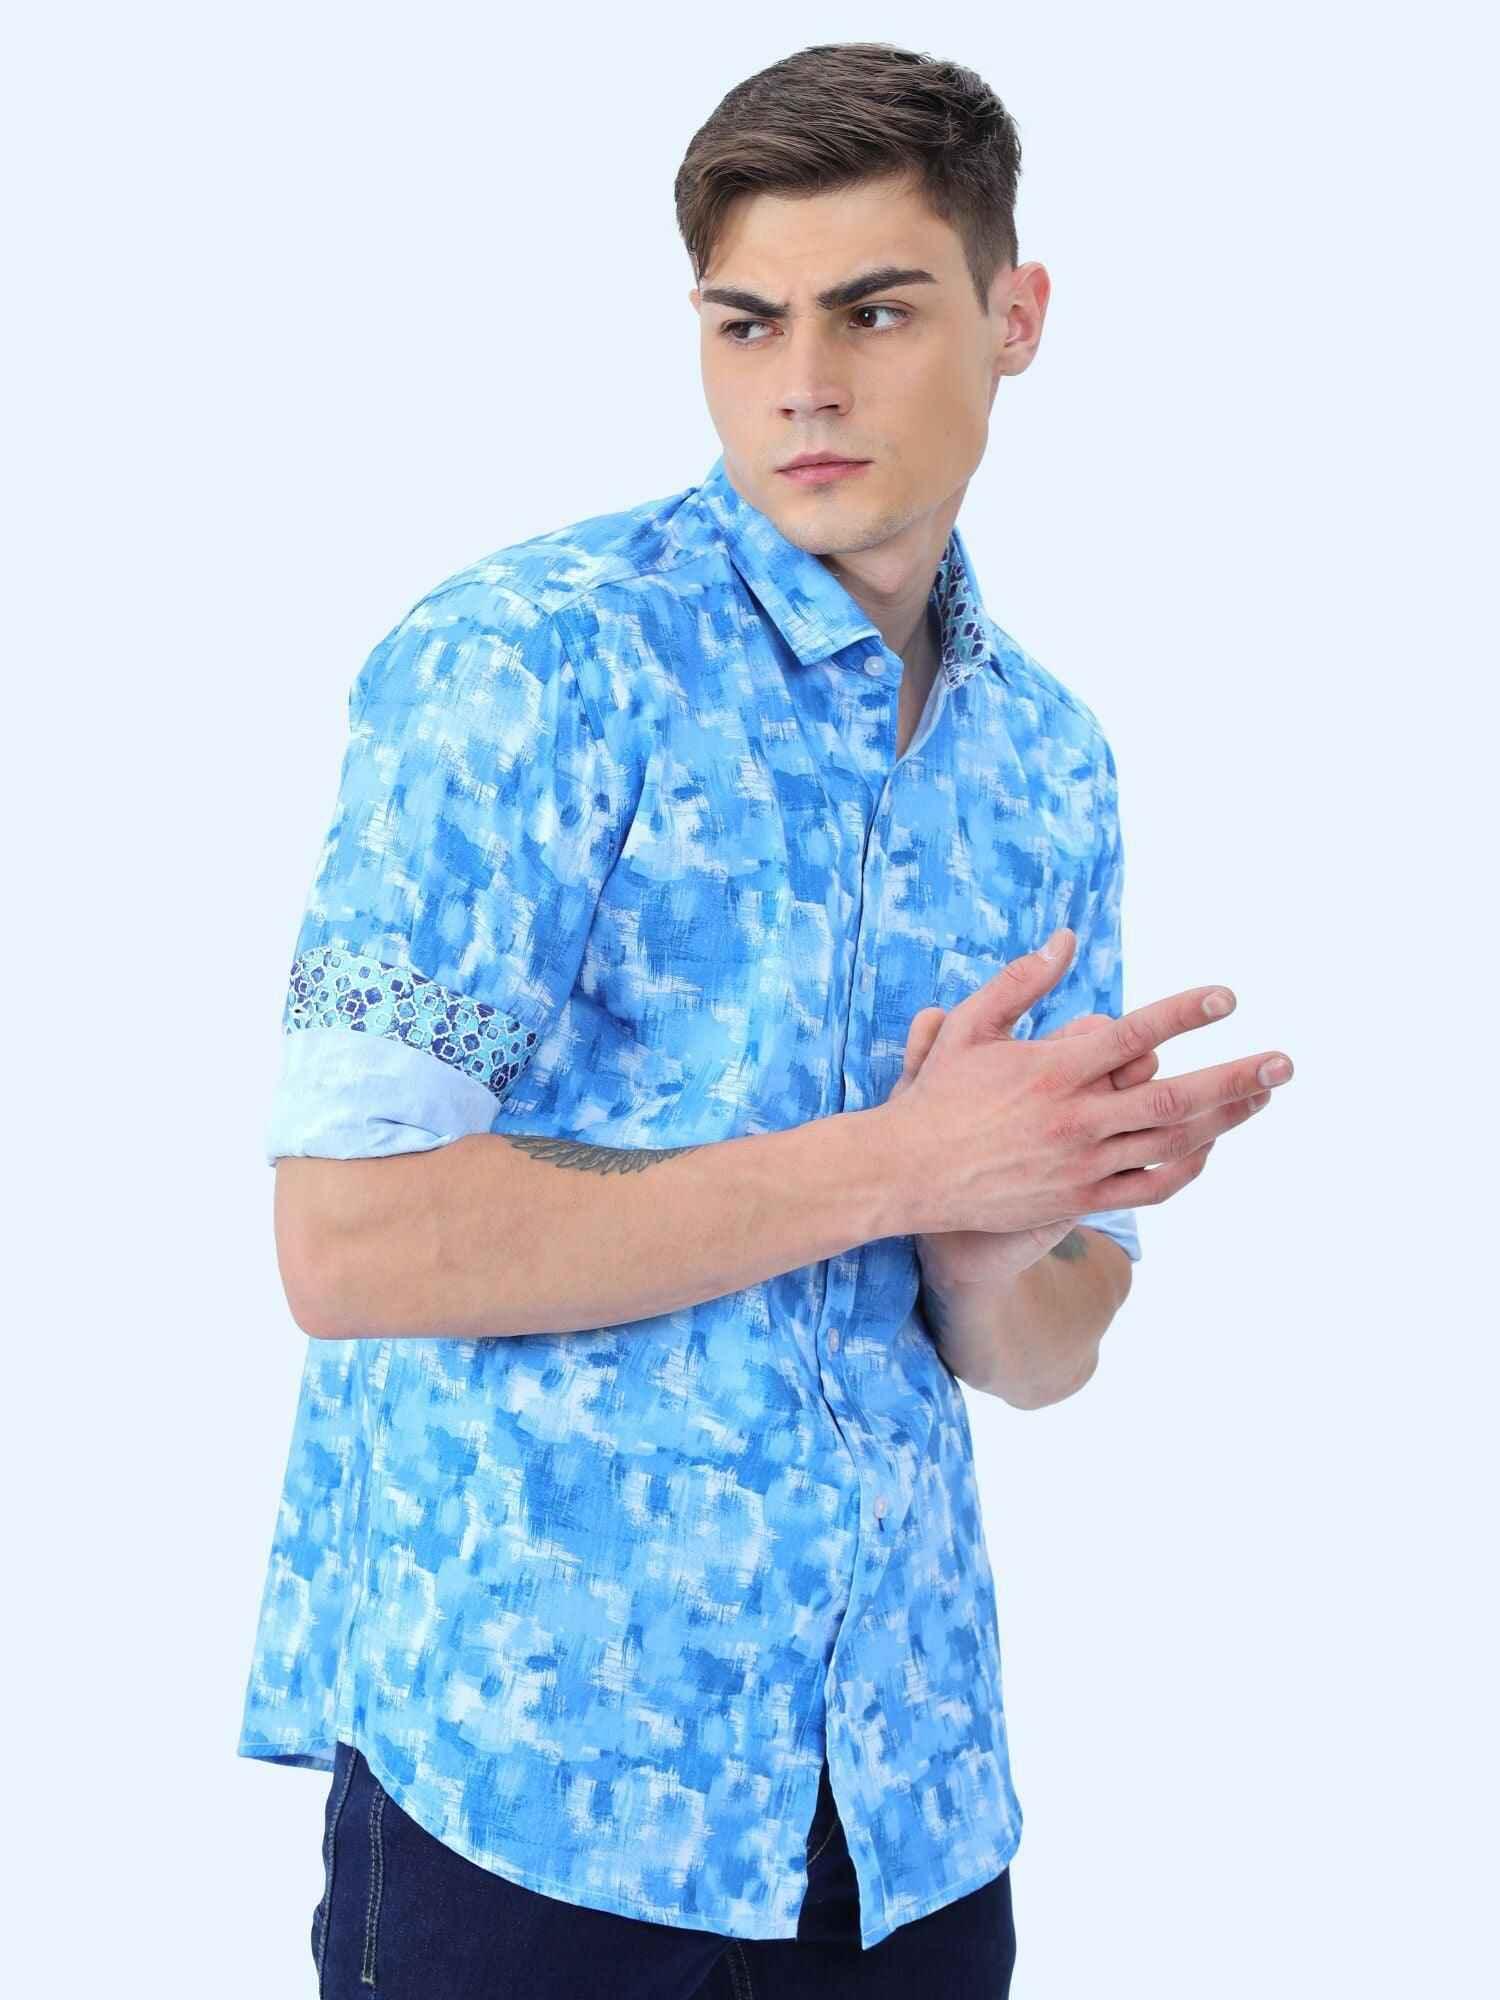 Everything Blue Digital Printed Full Shirt - Guniaa Fashions